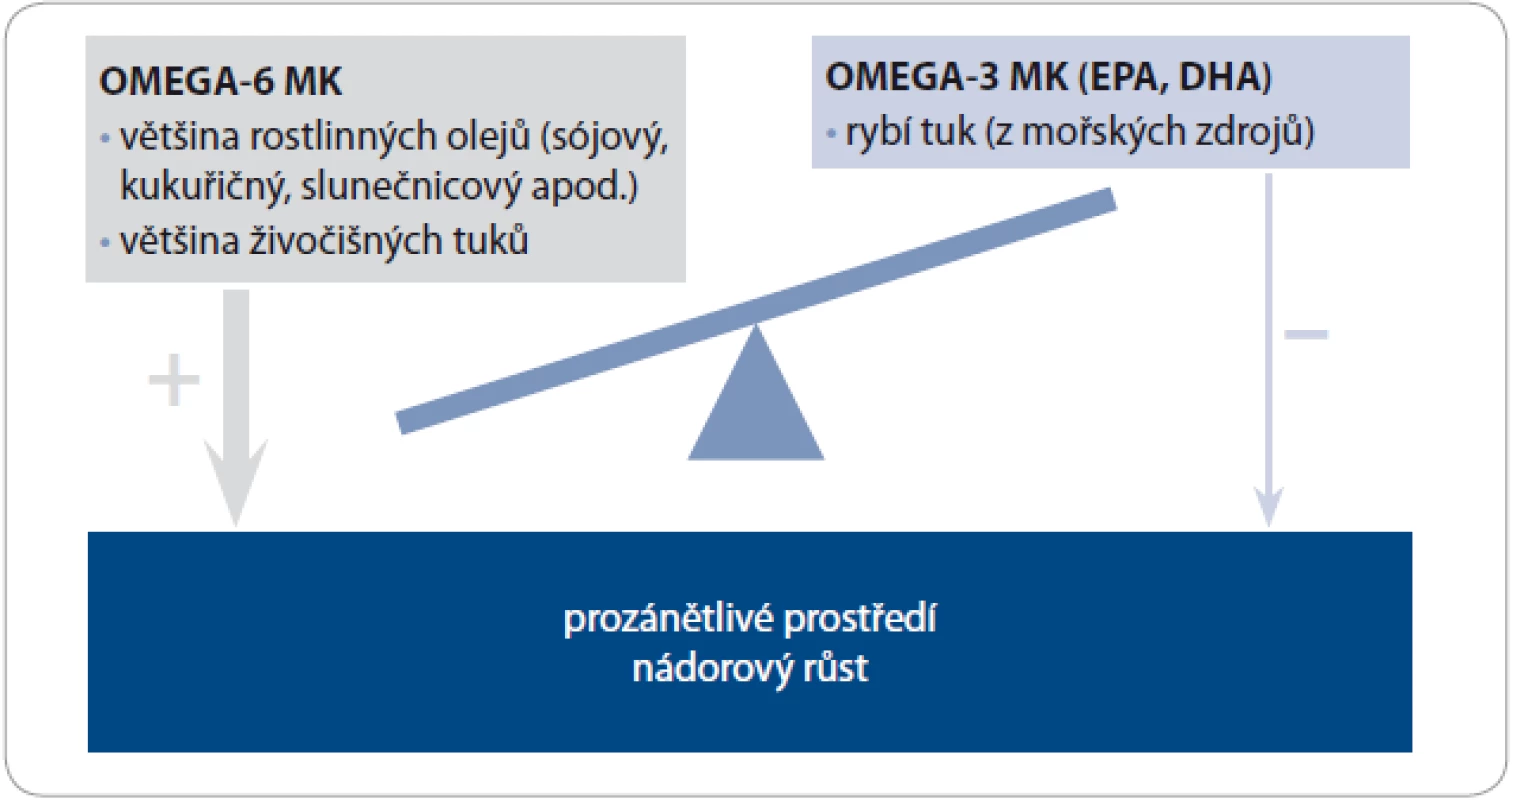 Nadmíra omega-6 MK ve stravě může kompetitivním způsobem vyrušit protizánětlivý a protinádorový efekt omega-3 MK.